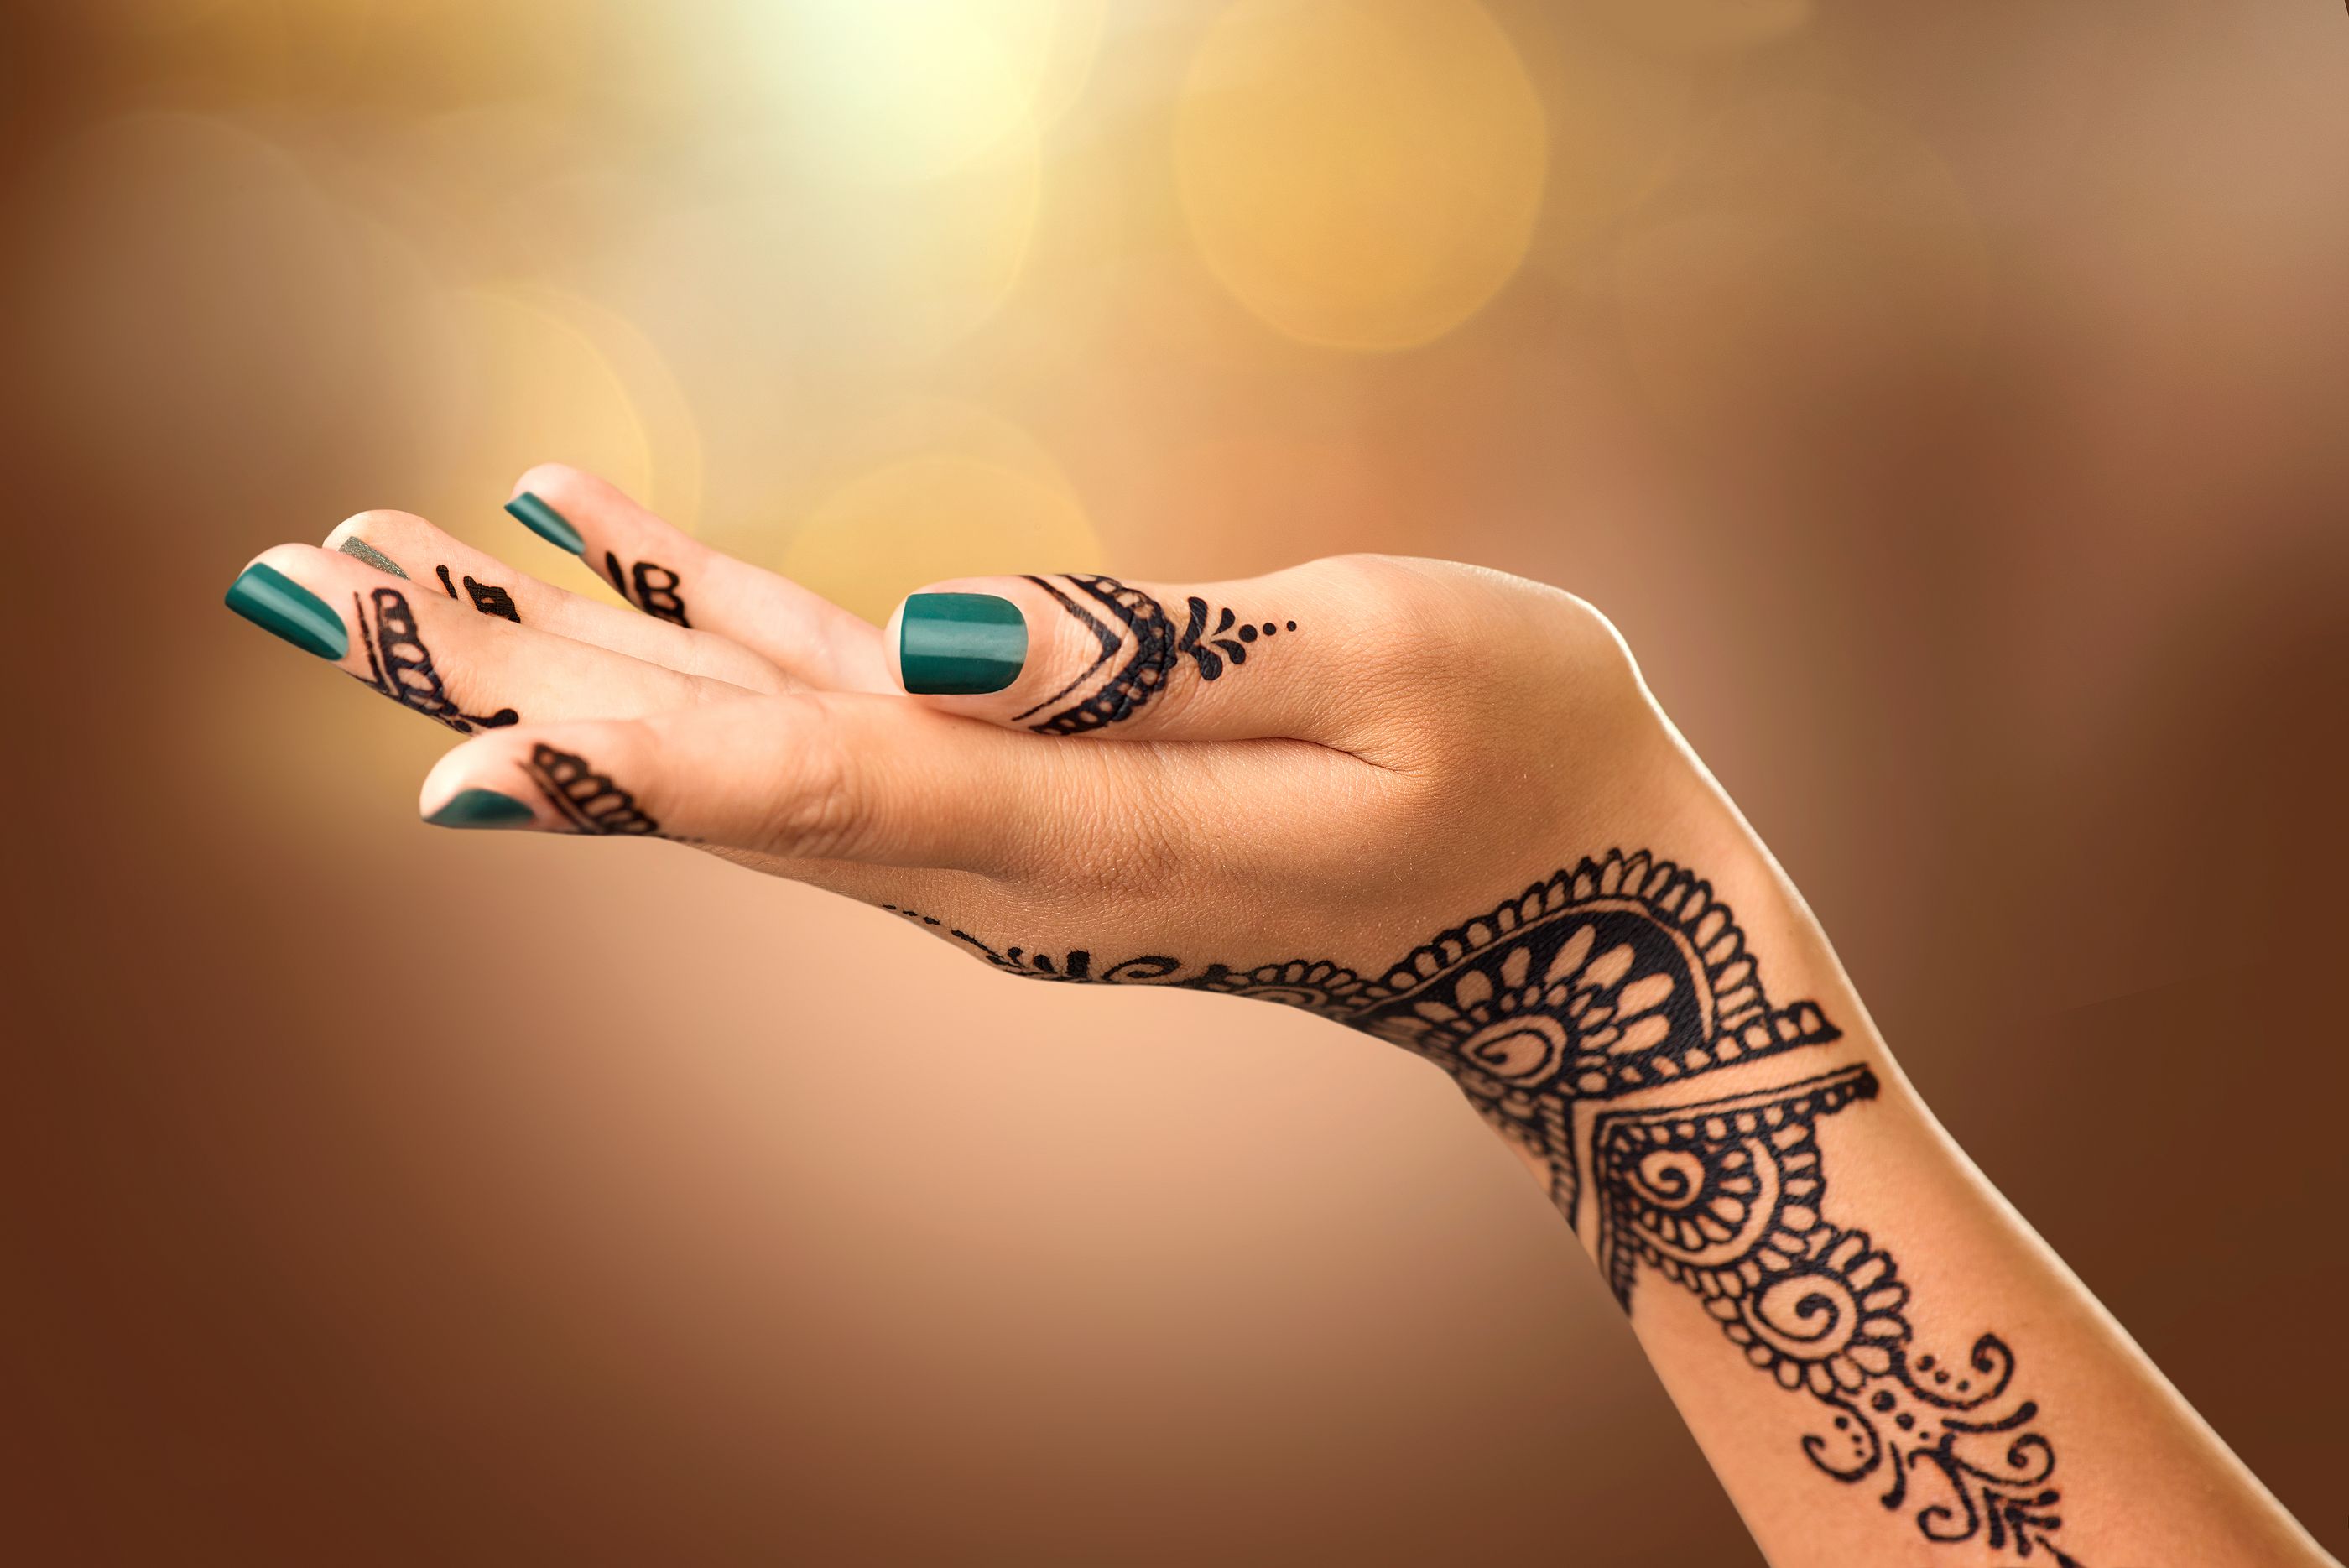 Sanidad alerta de los riesgos para la piel de los tatuajes de henna negra